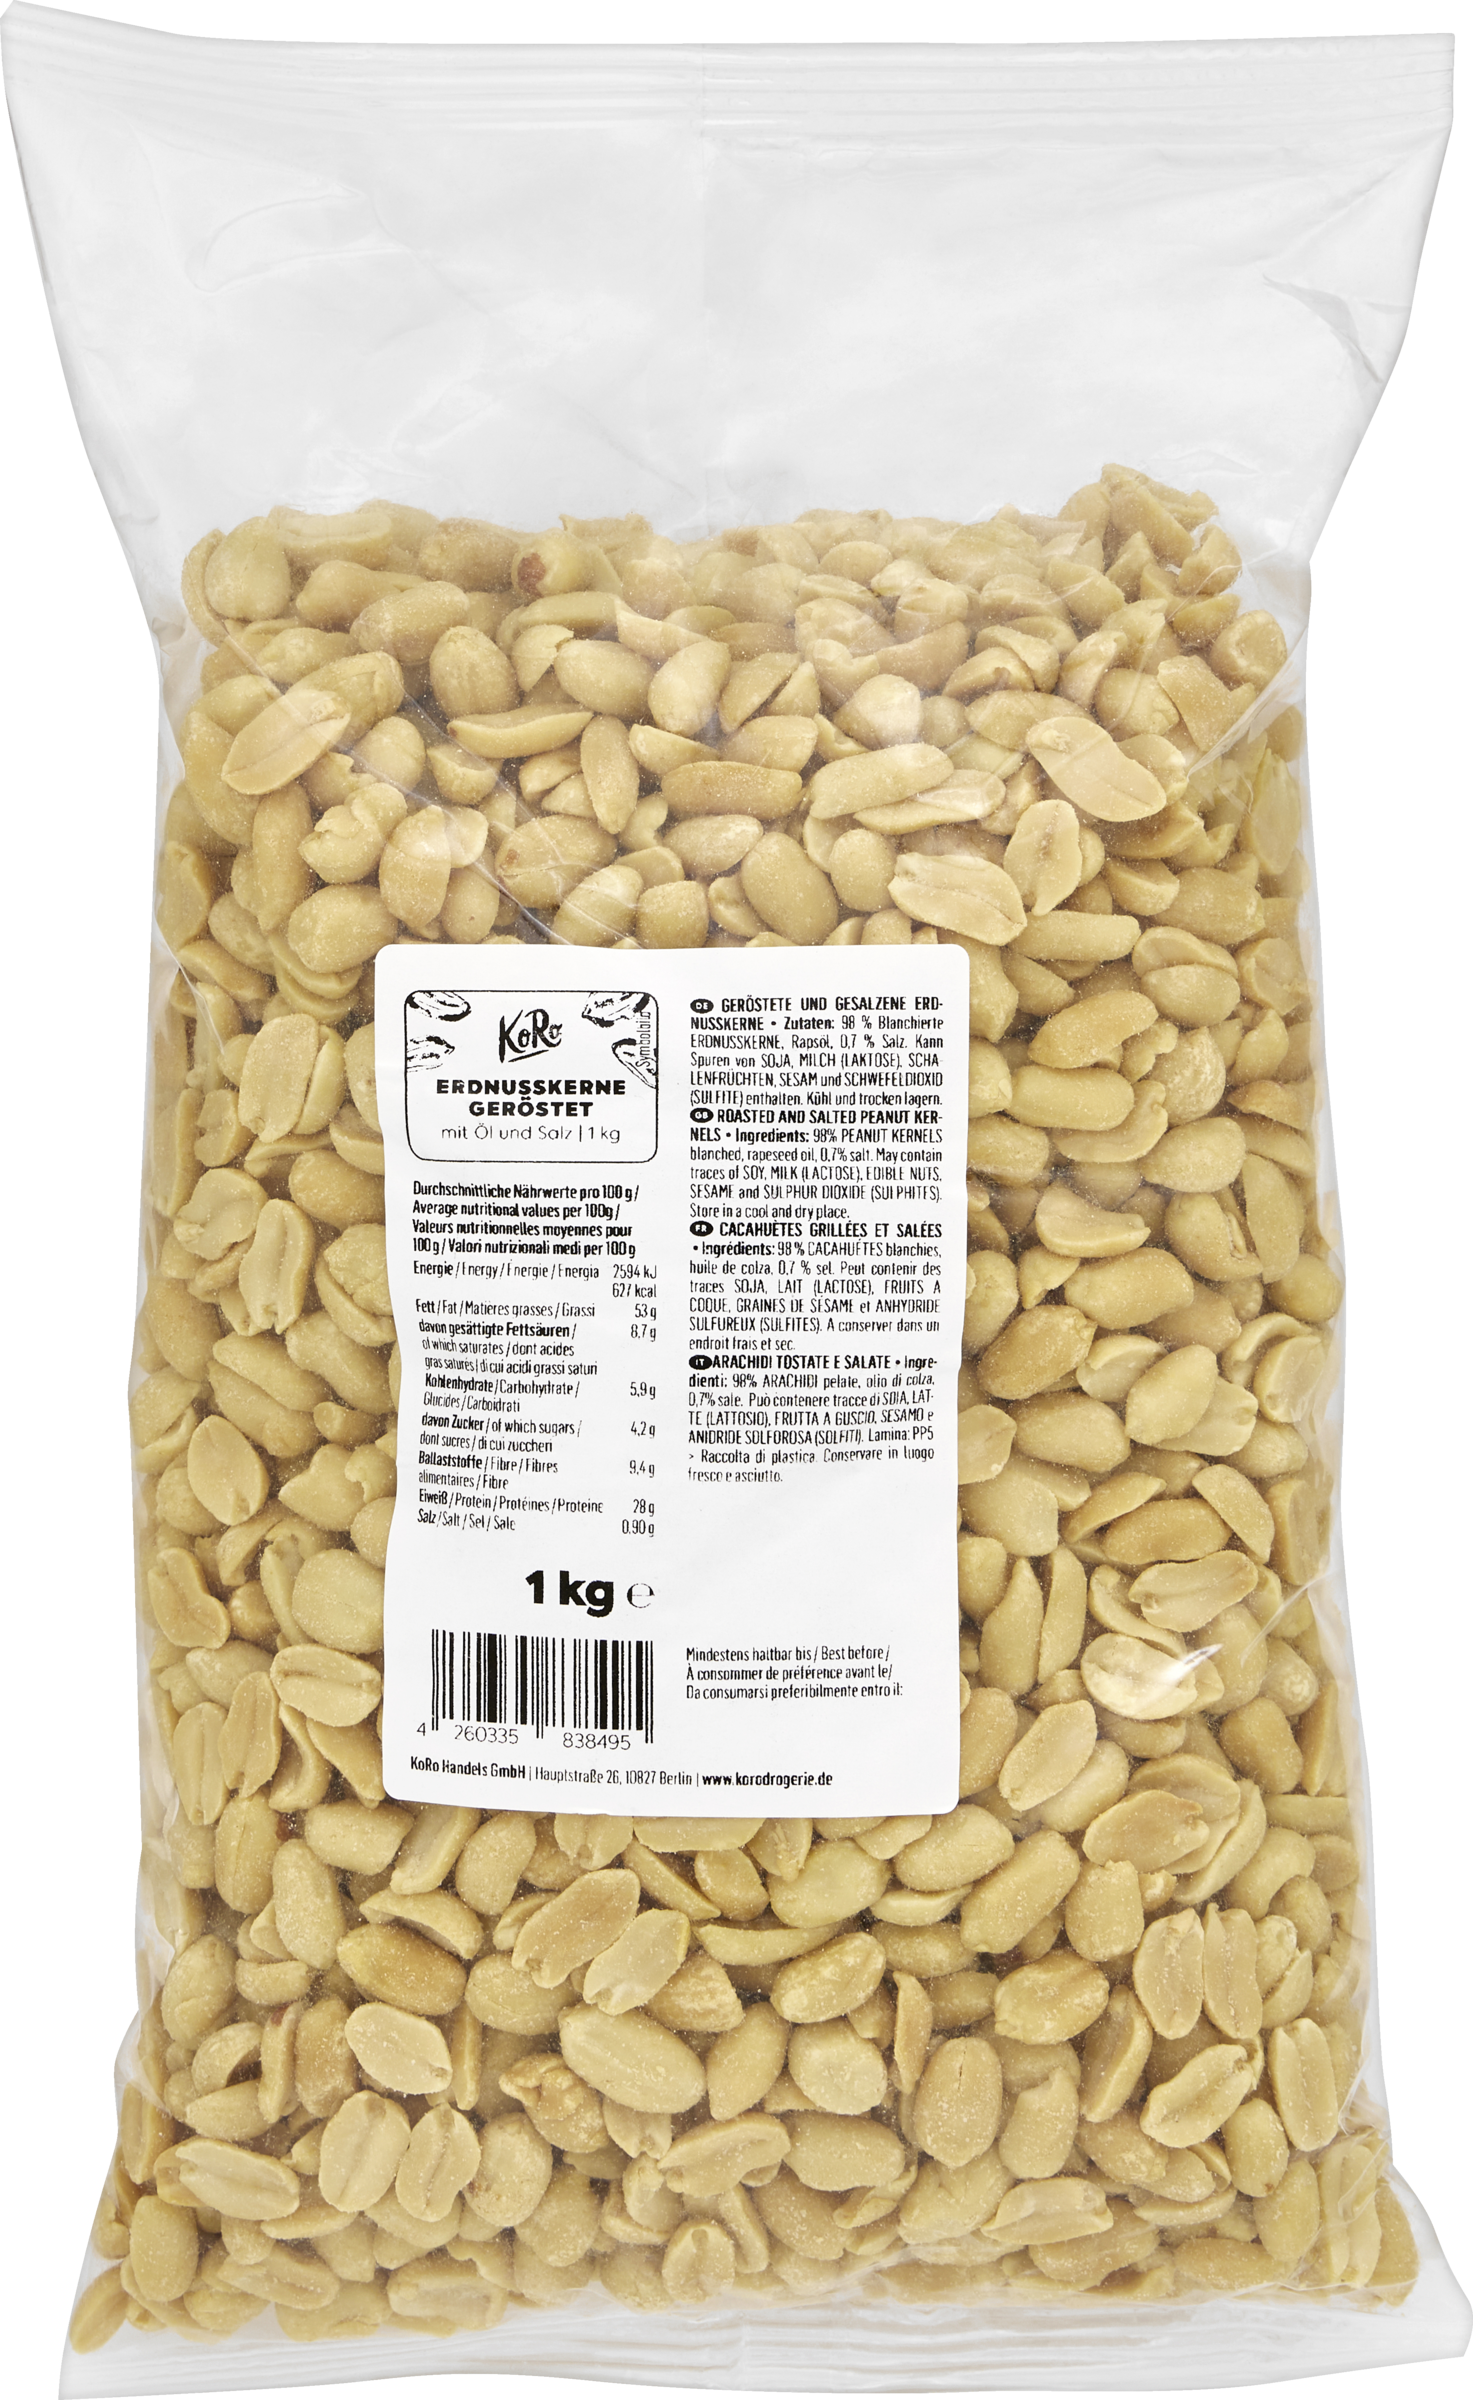 KoRo Roasted peanut kernels with salt and oil